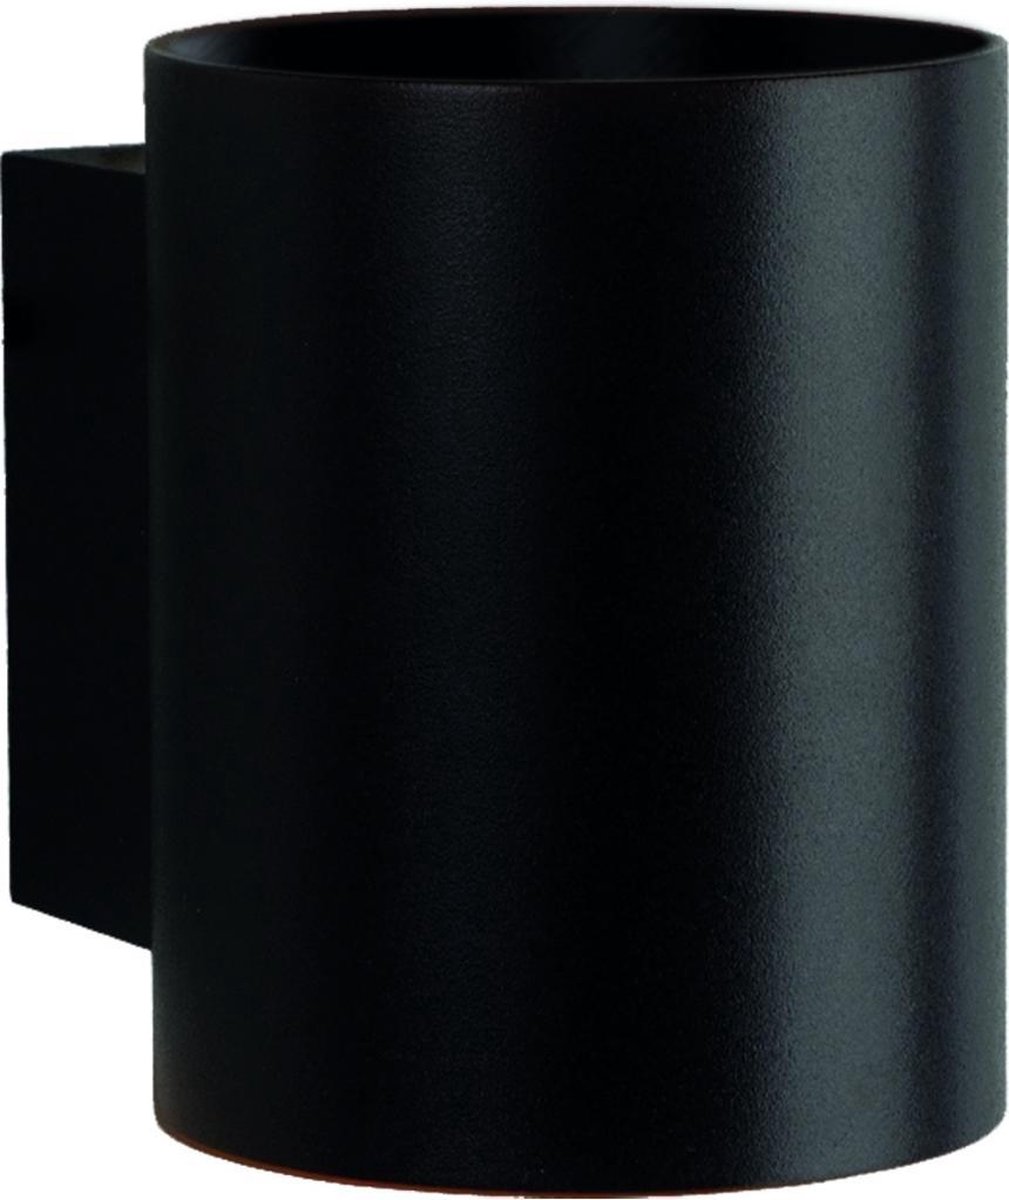 Spectrum - LED Wandlamp Rond - Mat Zwart met G9 fitting - 100x80x100mm